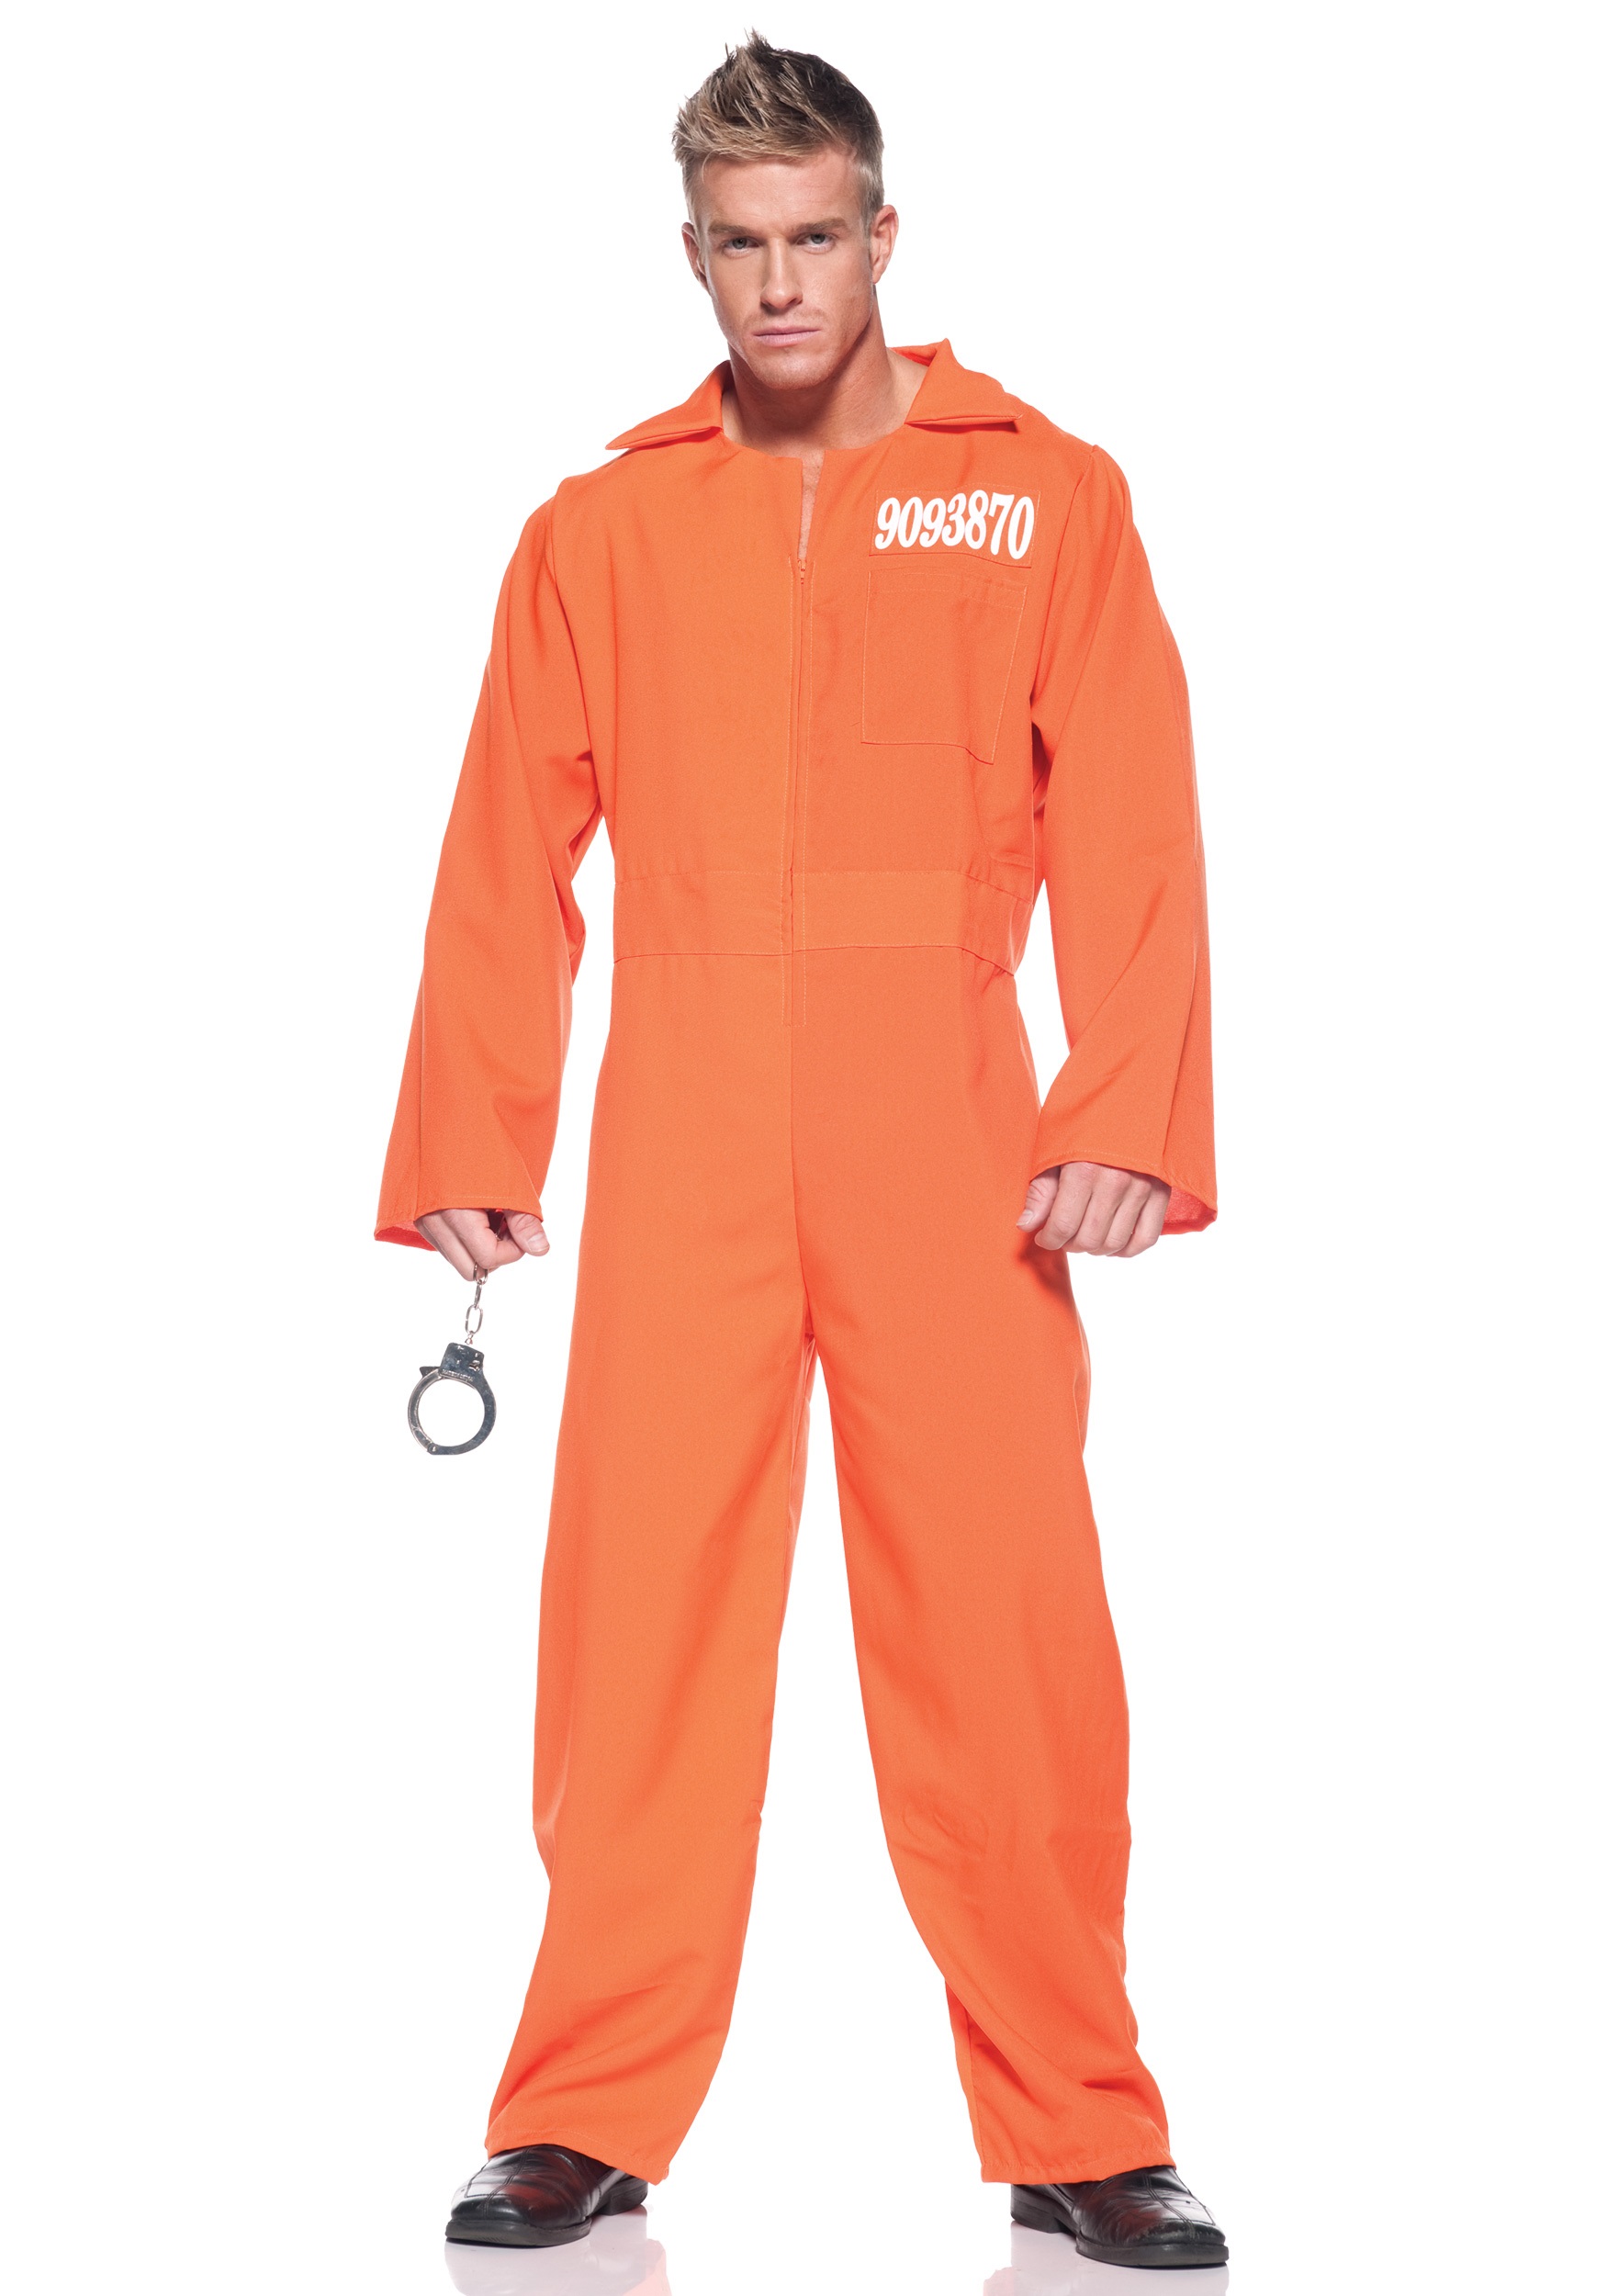 Plus Size Prison Jumpsuit Costume